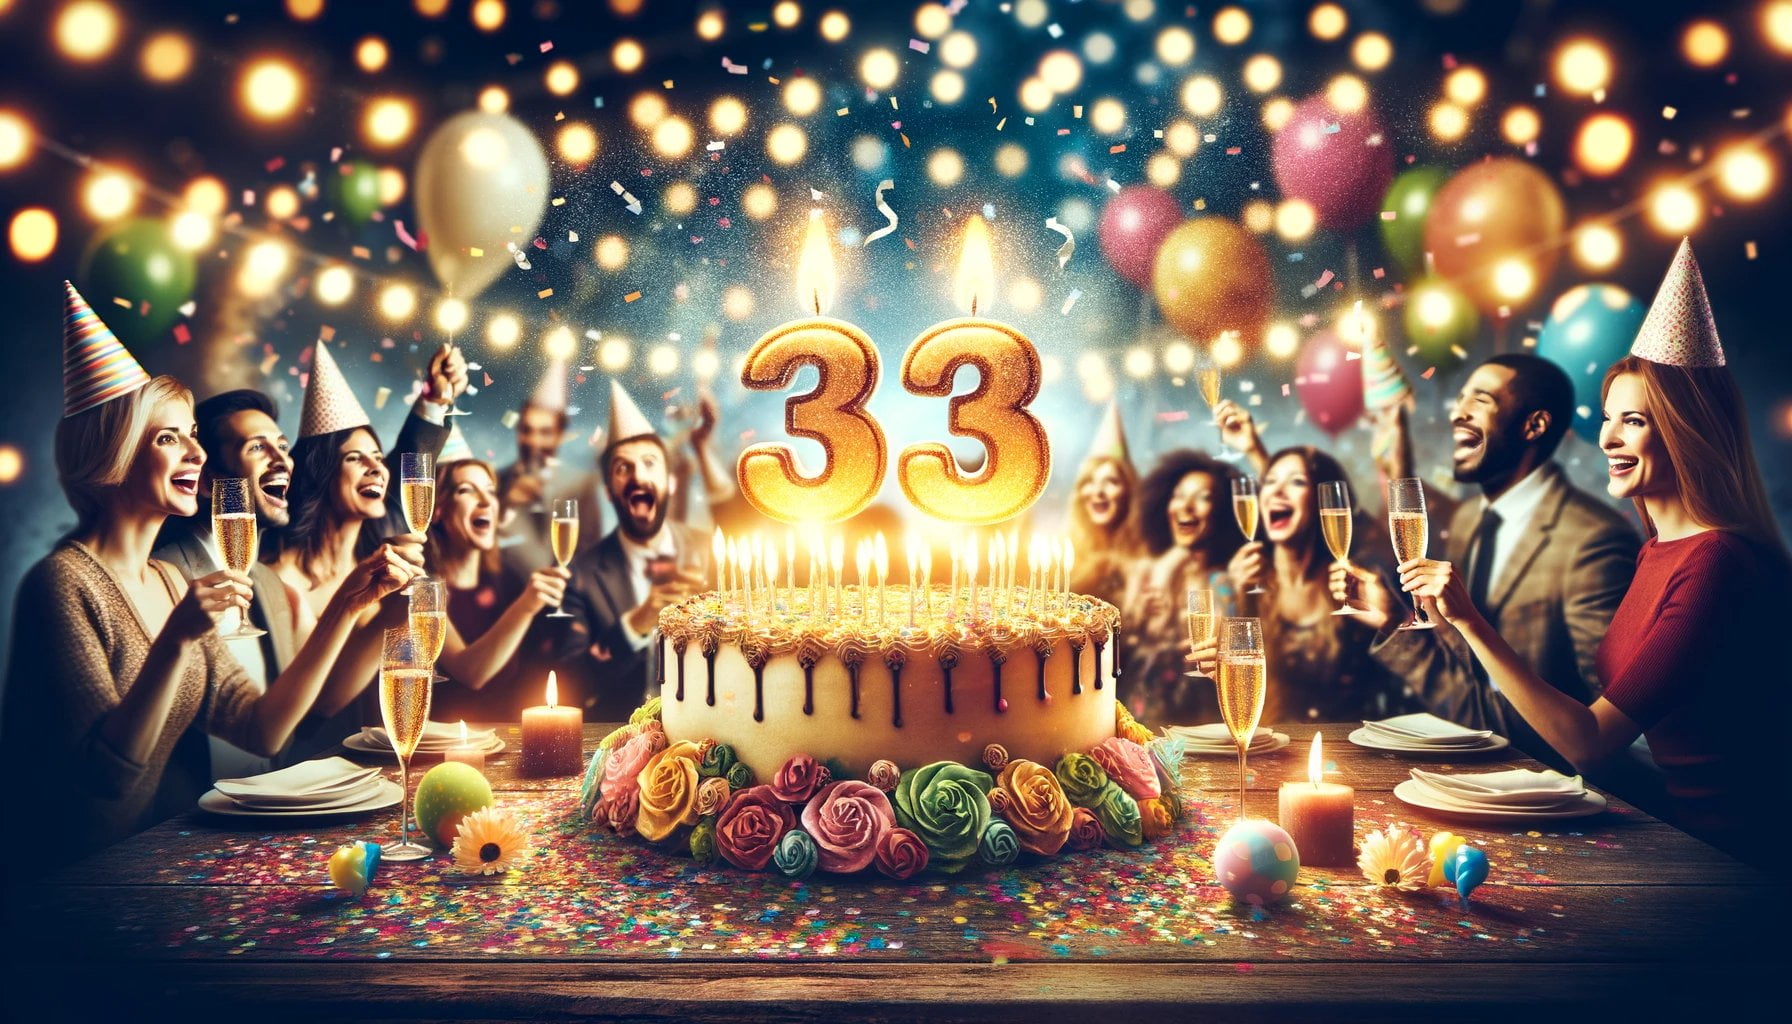 Why is 33 a big birthday 1